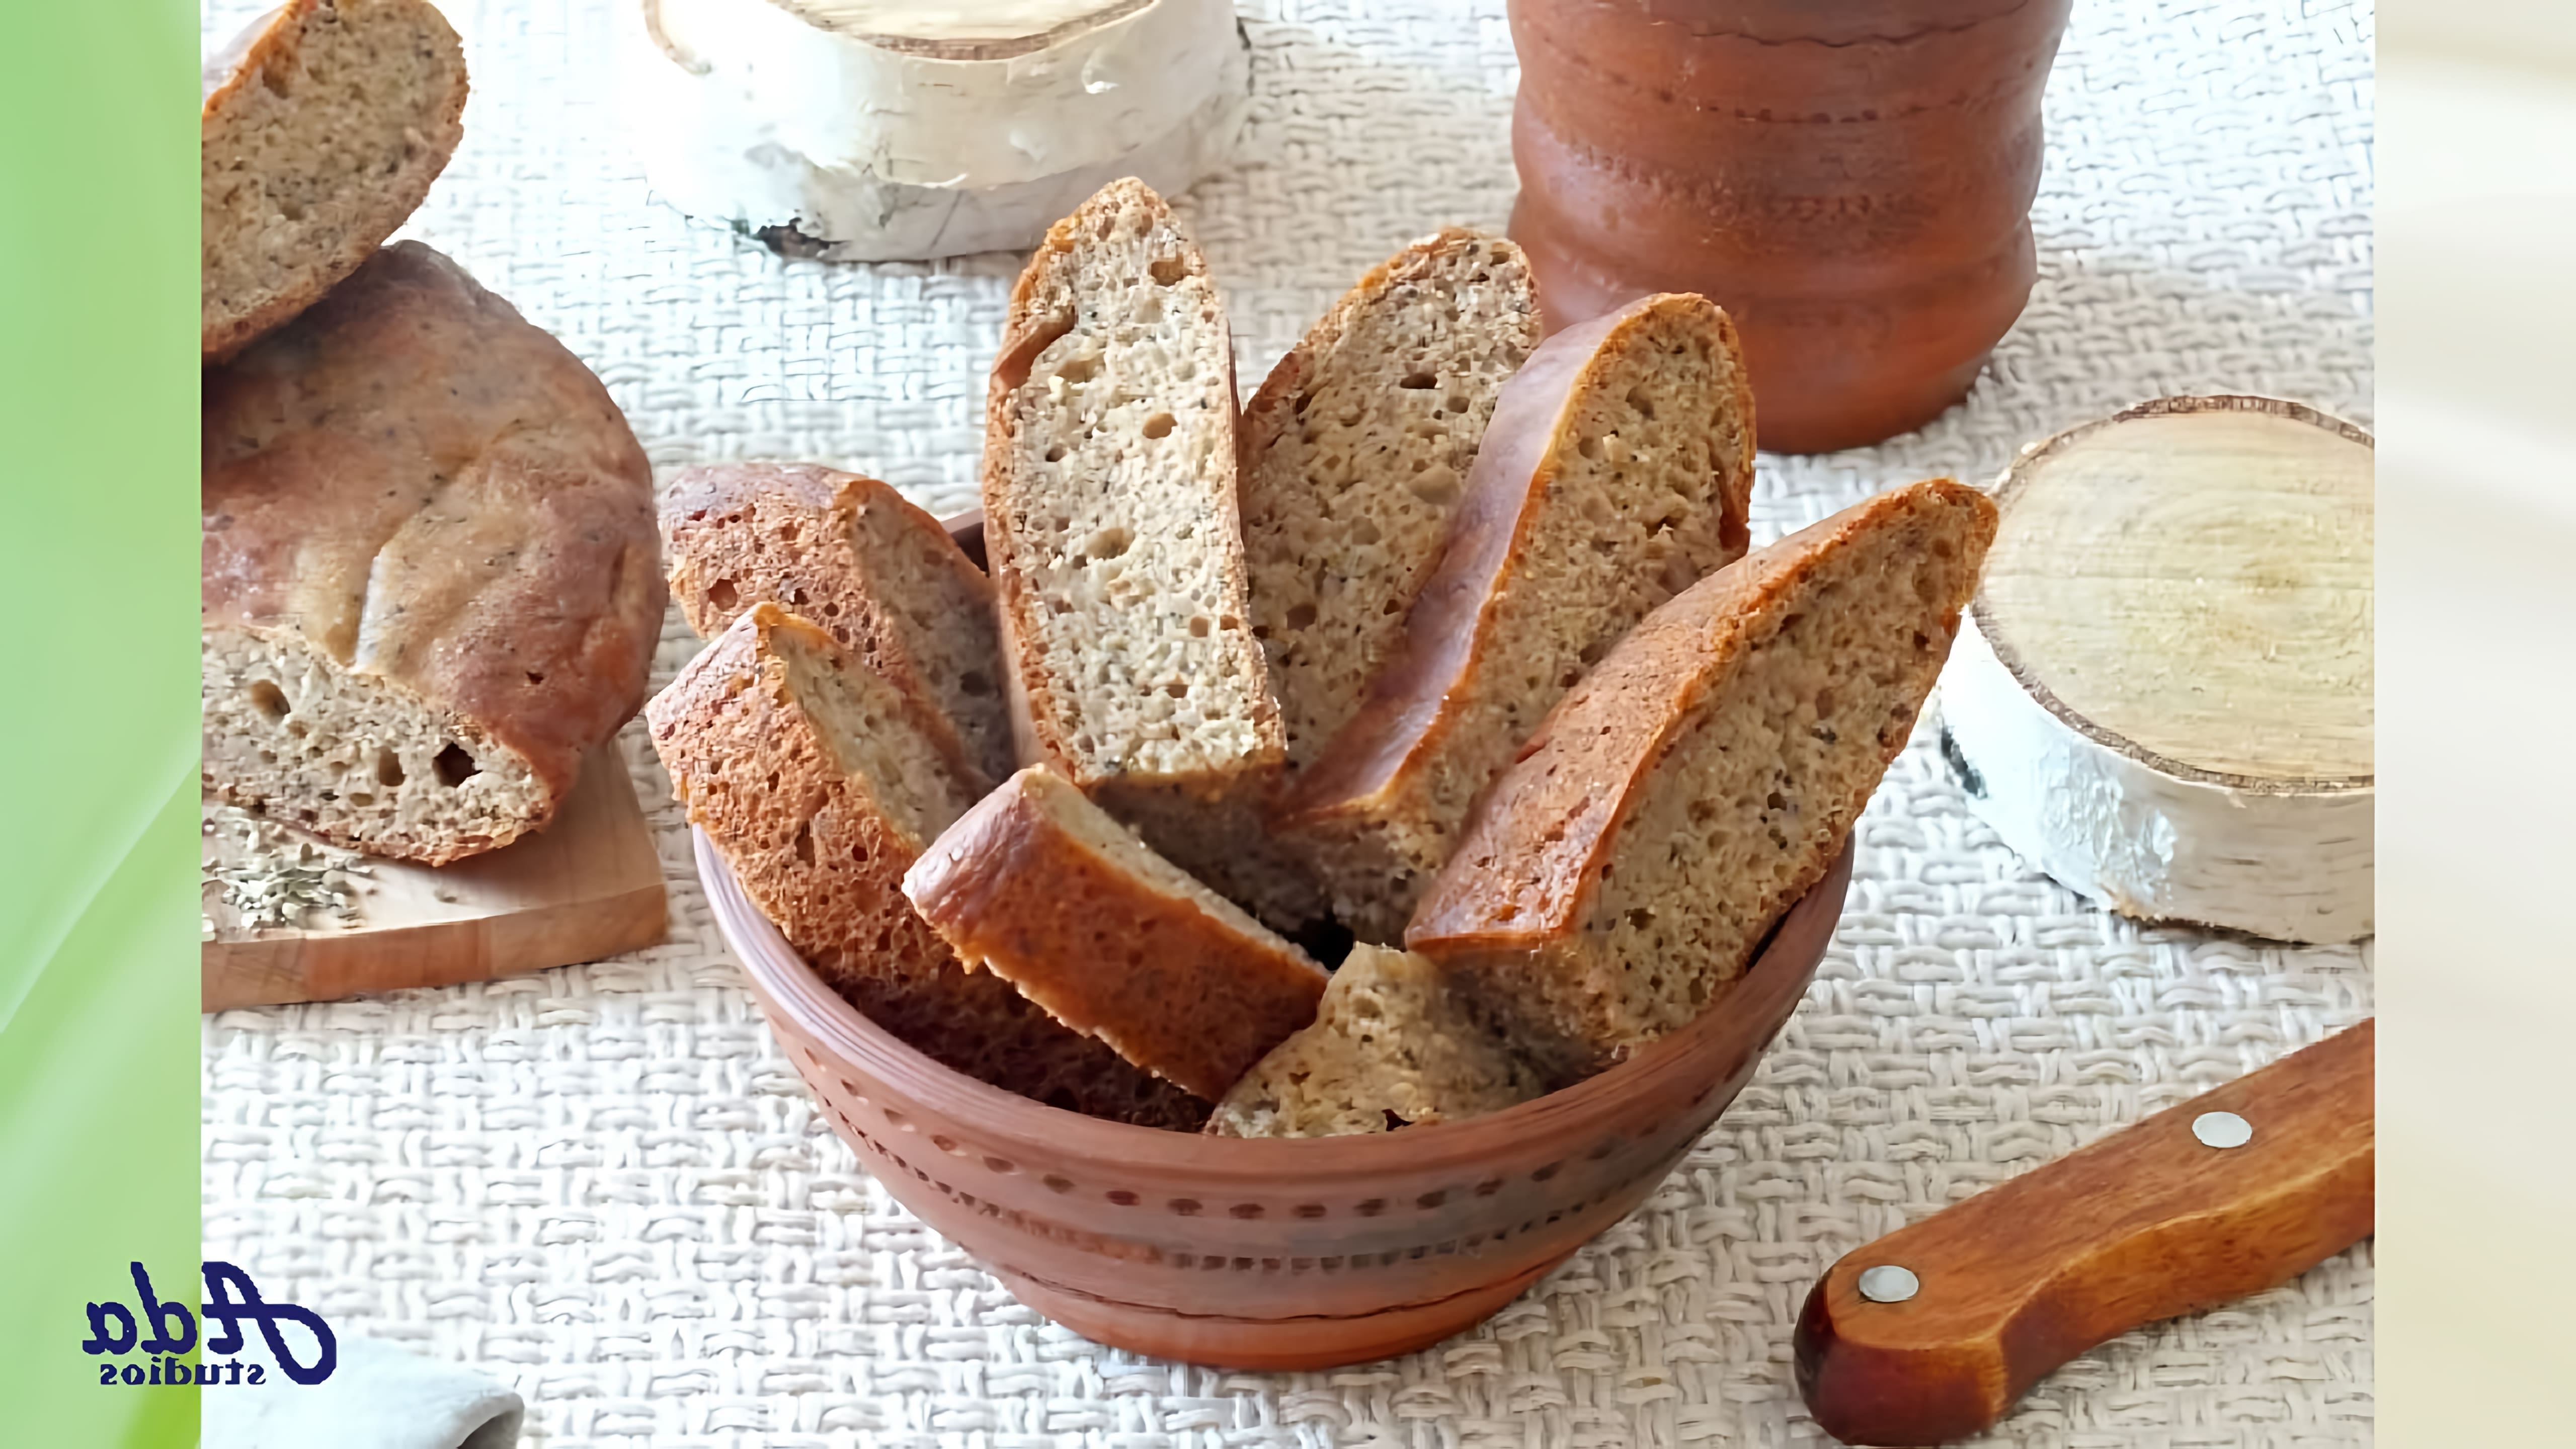 В этом видео демонстрируется рецепт приготовления цельнозернового хлеба в мультиварке без использования дрожжей